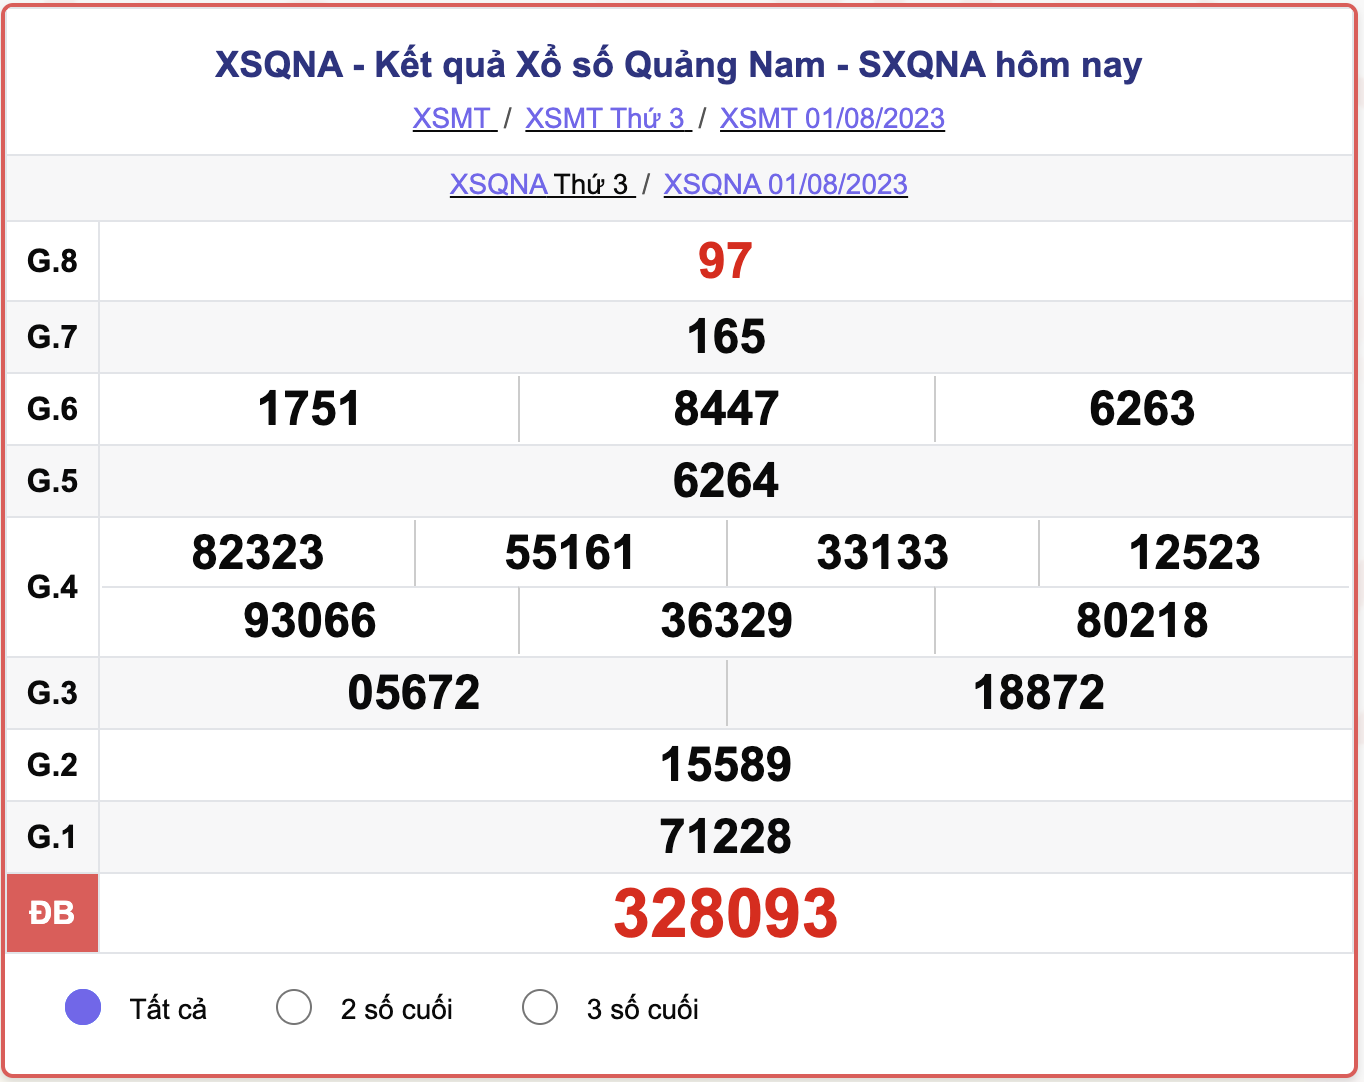 XSMT thứ 3, kết quả xổ số Quảng Nam ngày 1/8/2023